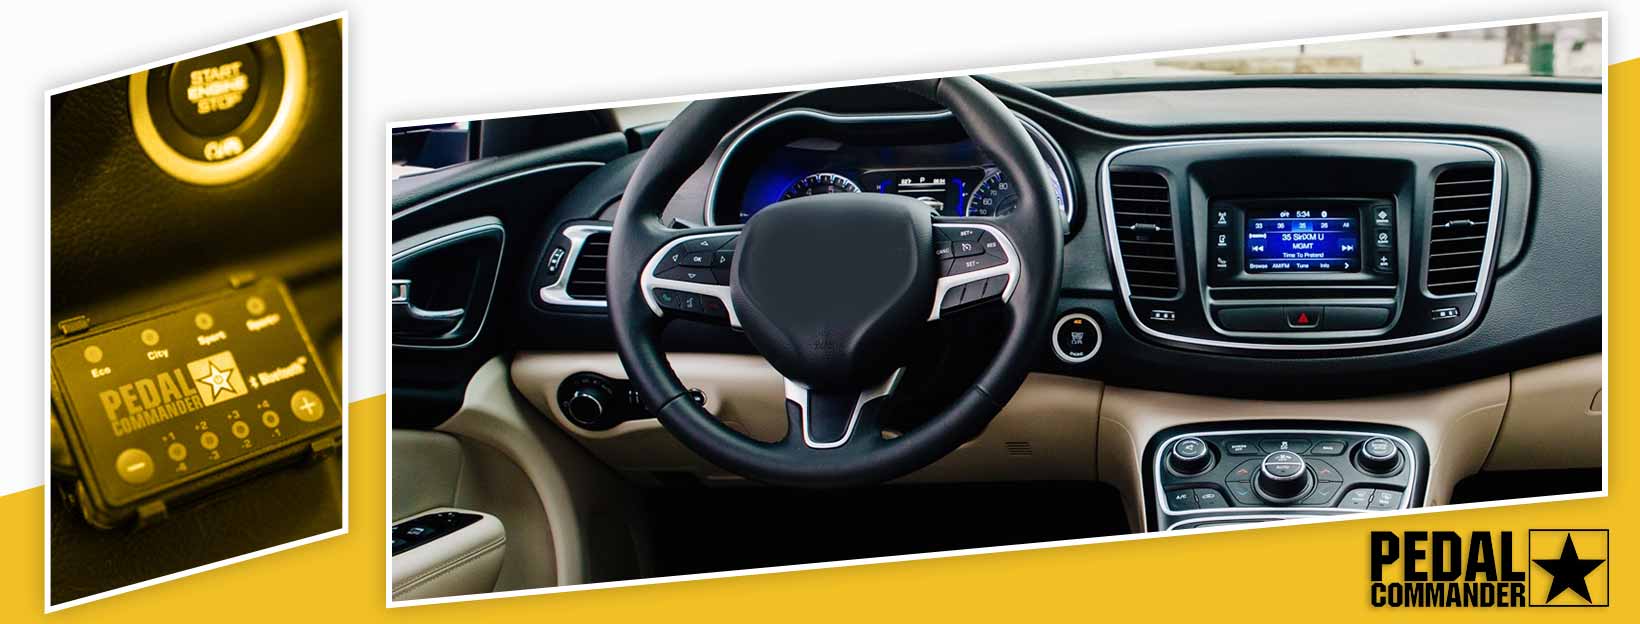 Pedal Commander for Chrysler 200 - interior